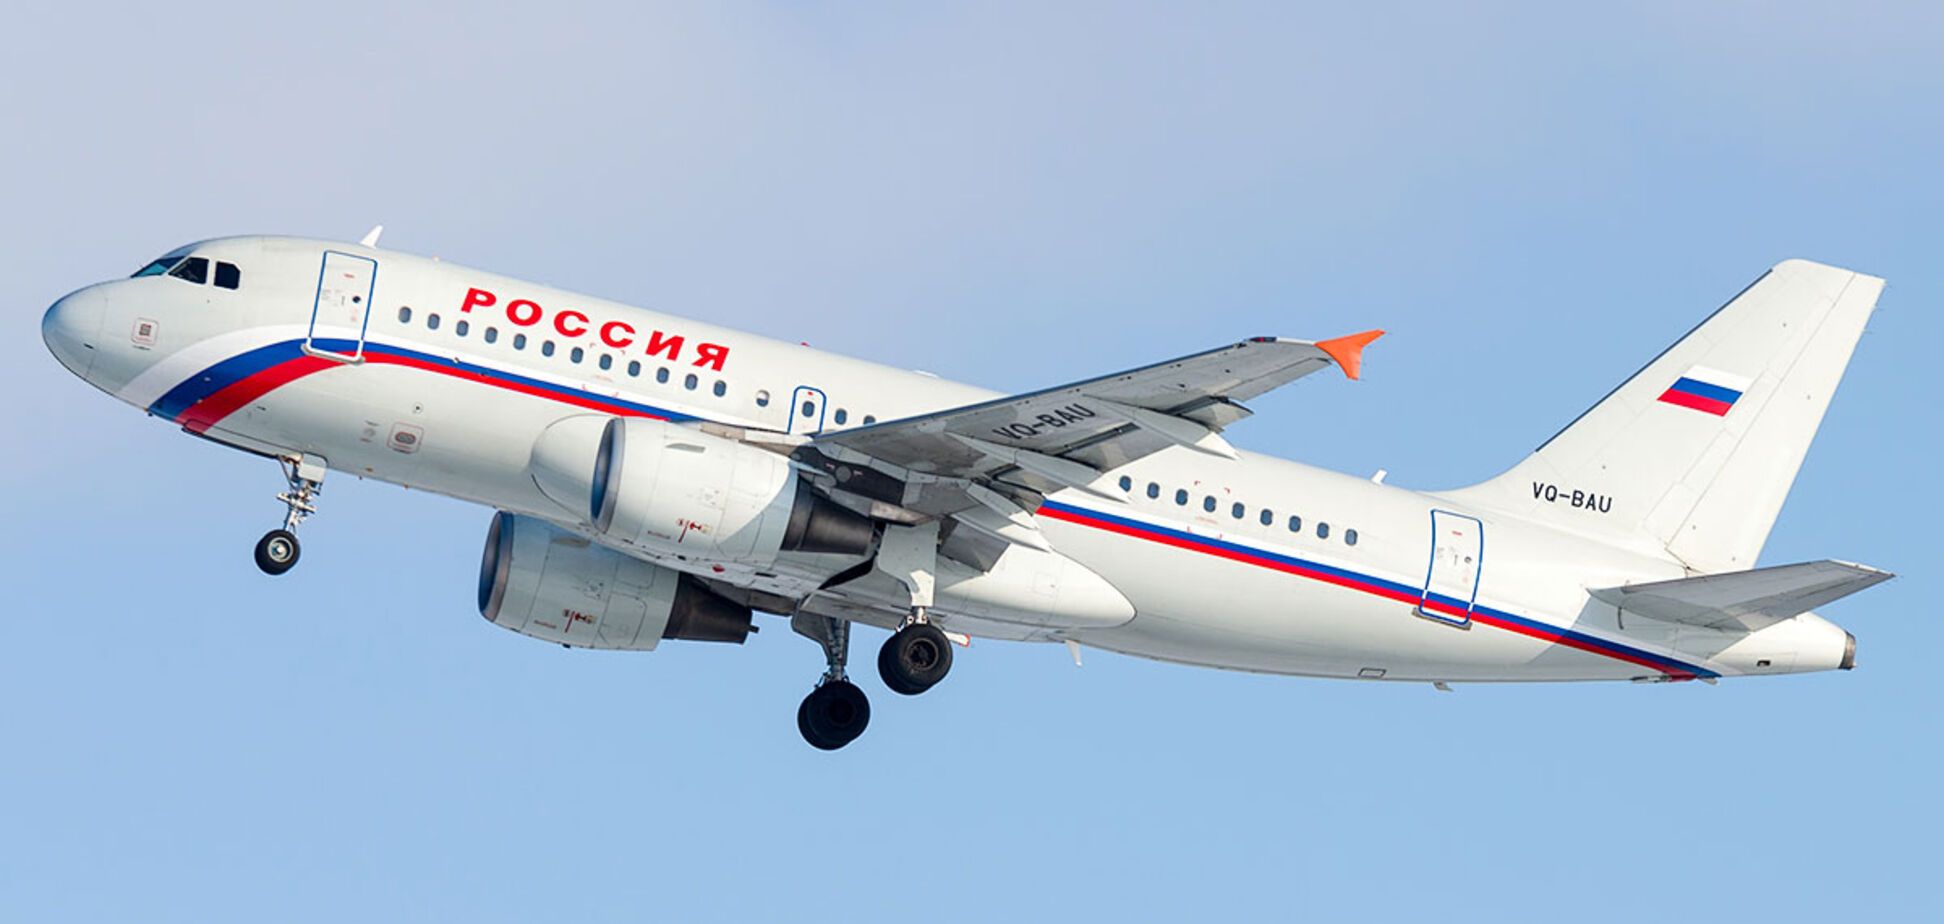 Розсипався у повітрі: в Росії сталася страшна НП з літаком